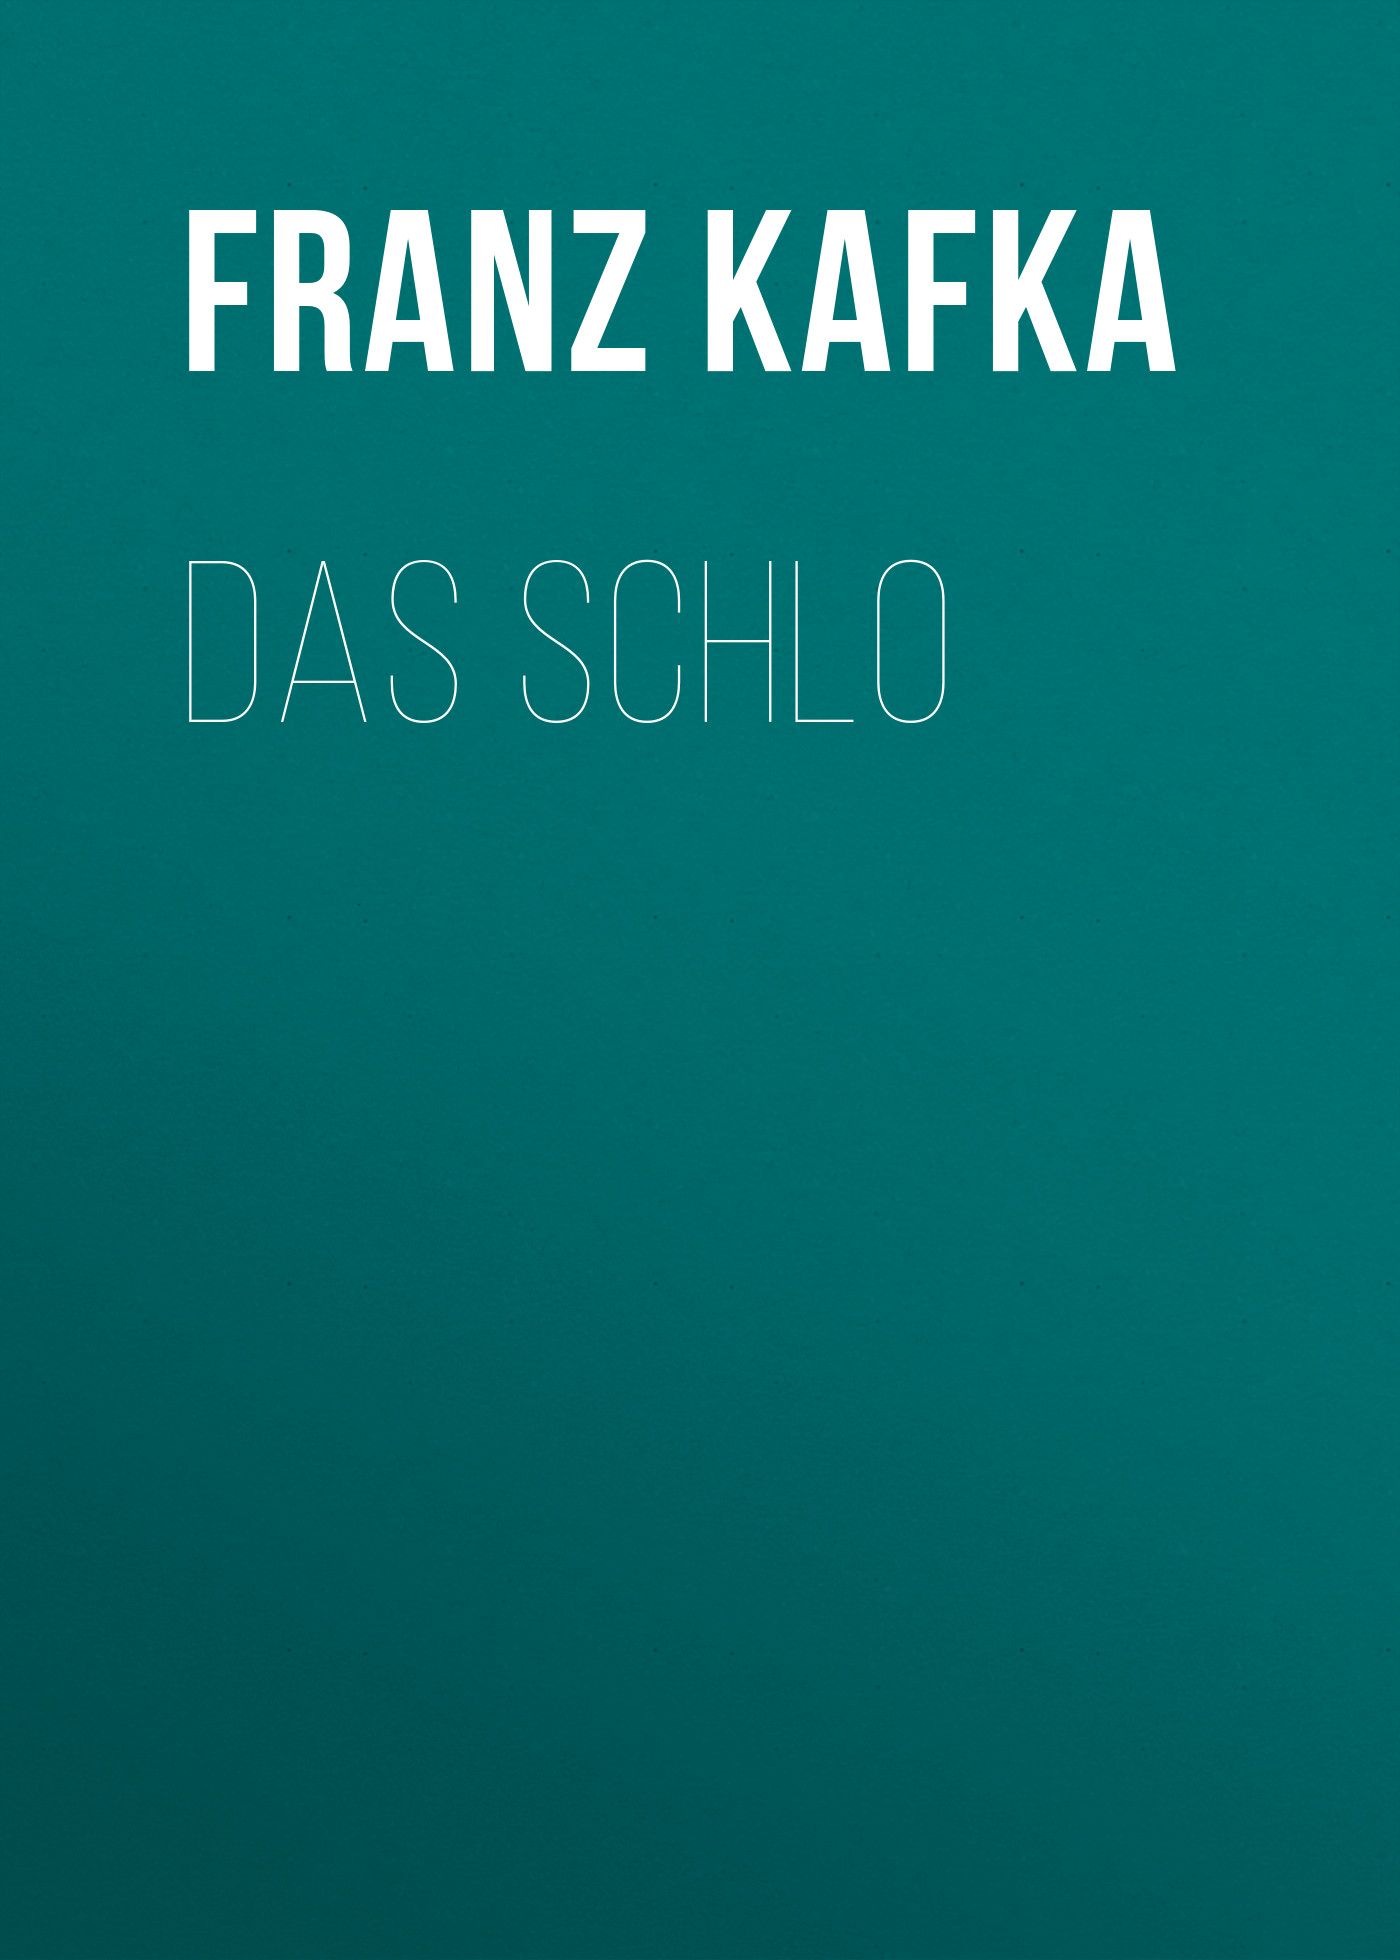 Книга Das Schlo из серии , созданная Franz Kafka, может относится к жанру Зарубежная классика. Стоимость электронной книги Das Schlo с идентификатором 48633244 составляет 0 руб.